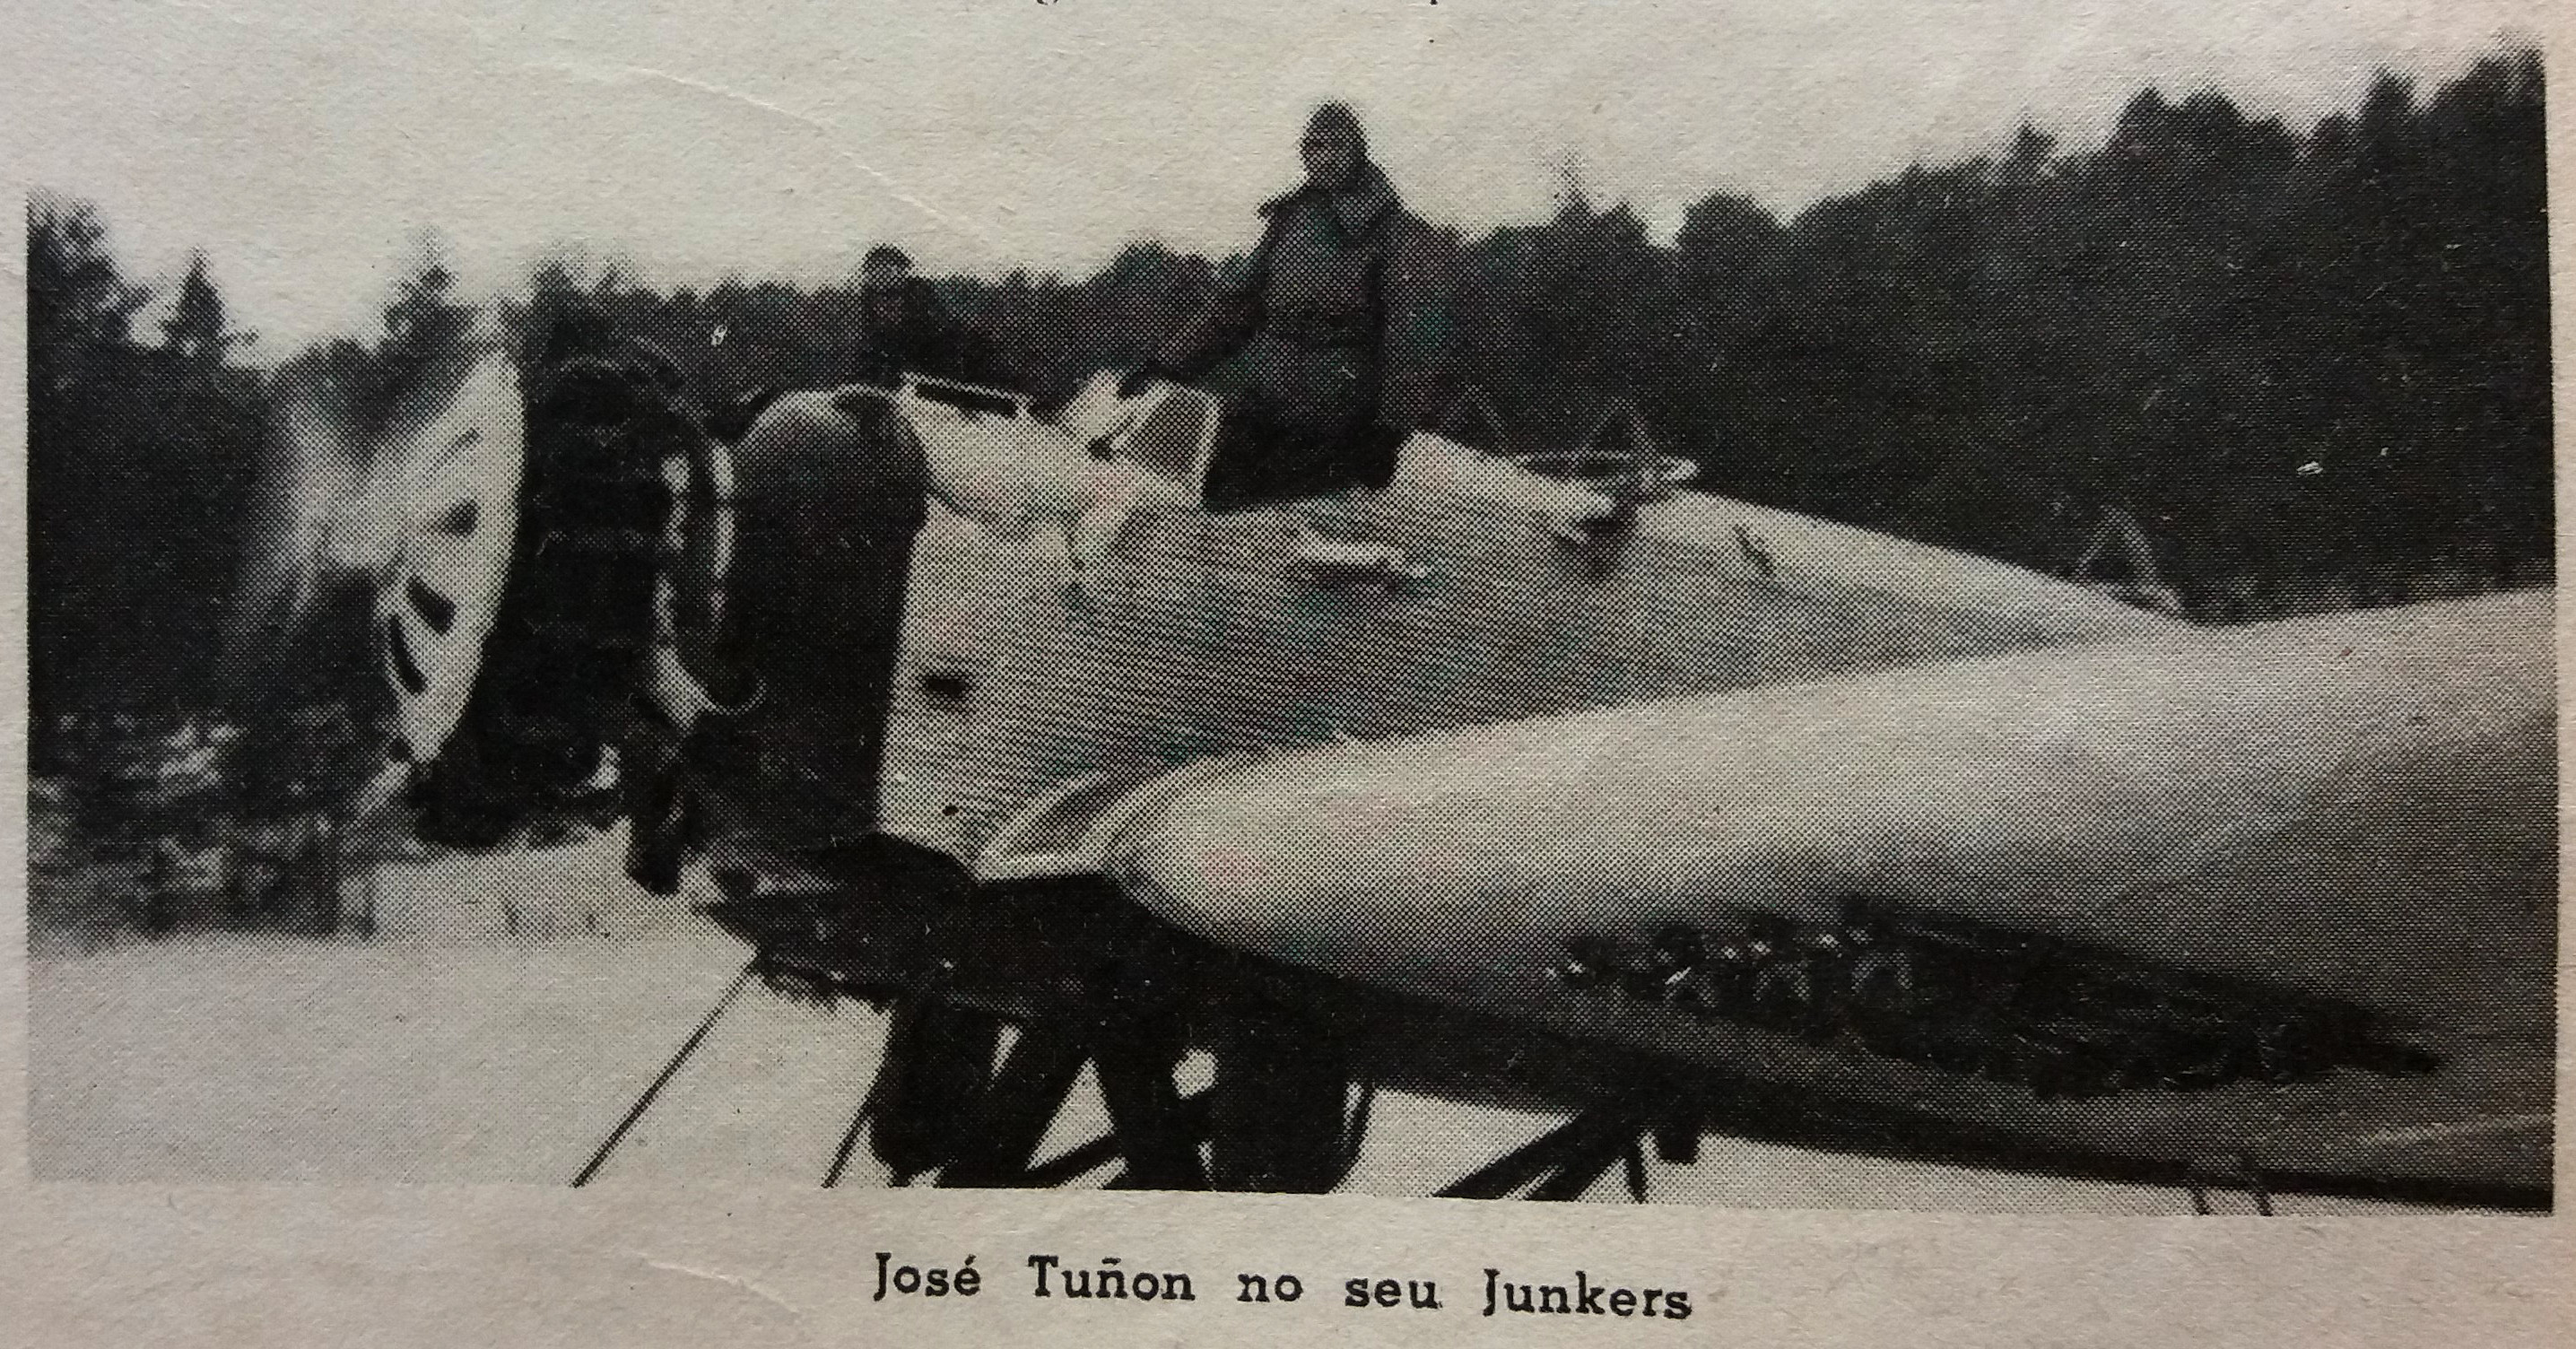 José Toñin num avião Junkers- in a Junkers airplane